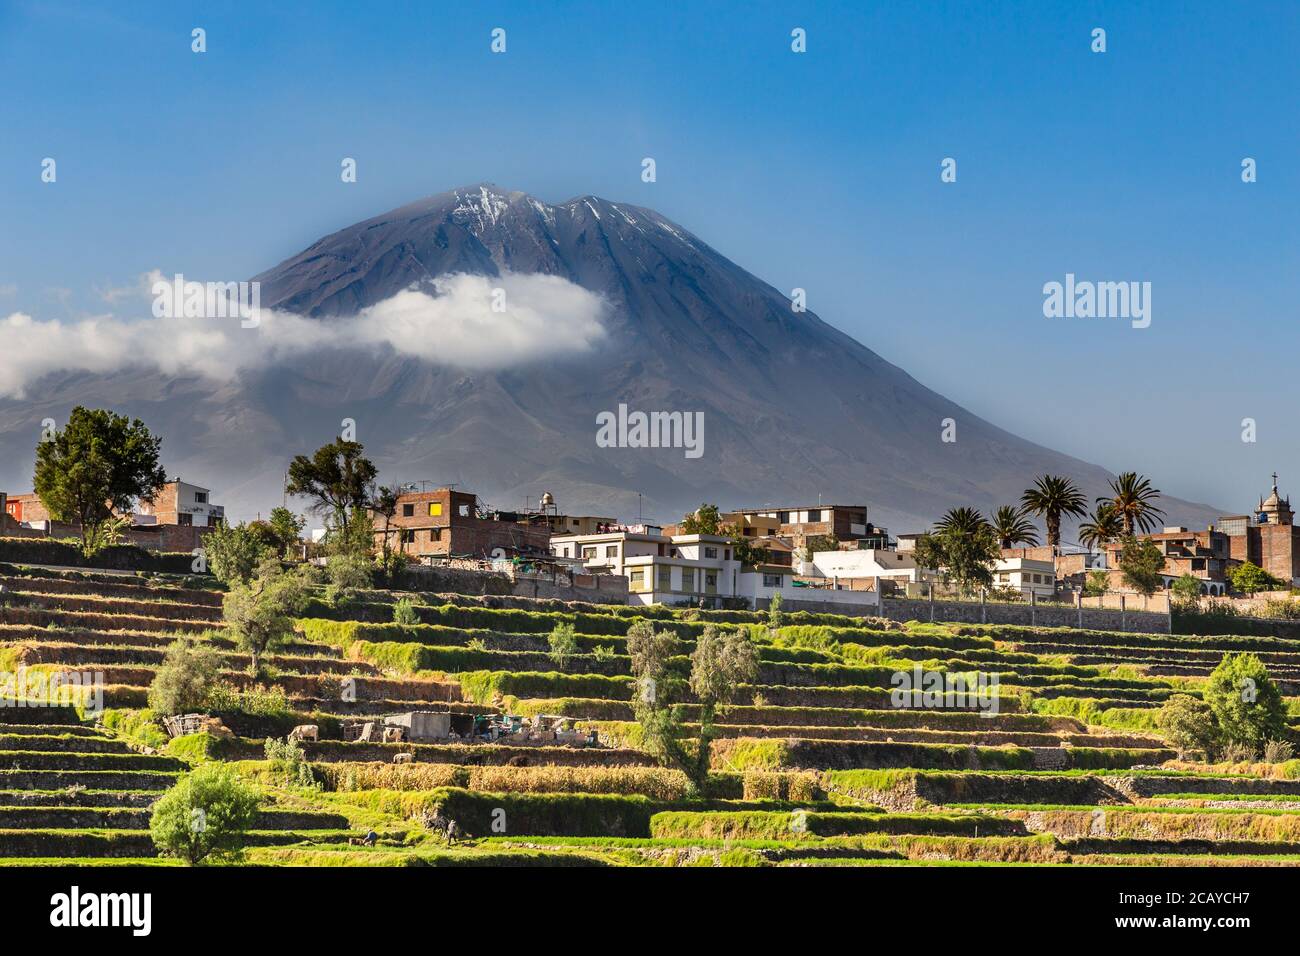 Volcan Misti dormant sur les champs et les maisons de la ville péruvienne d'Arequipa, Pérou Banque D'Images